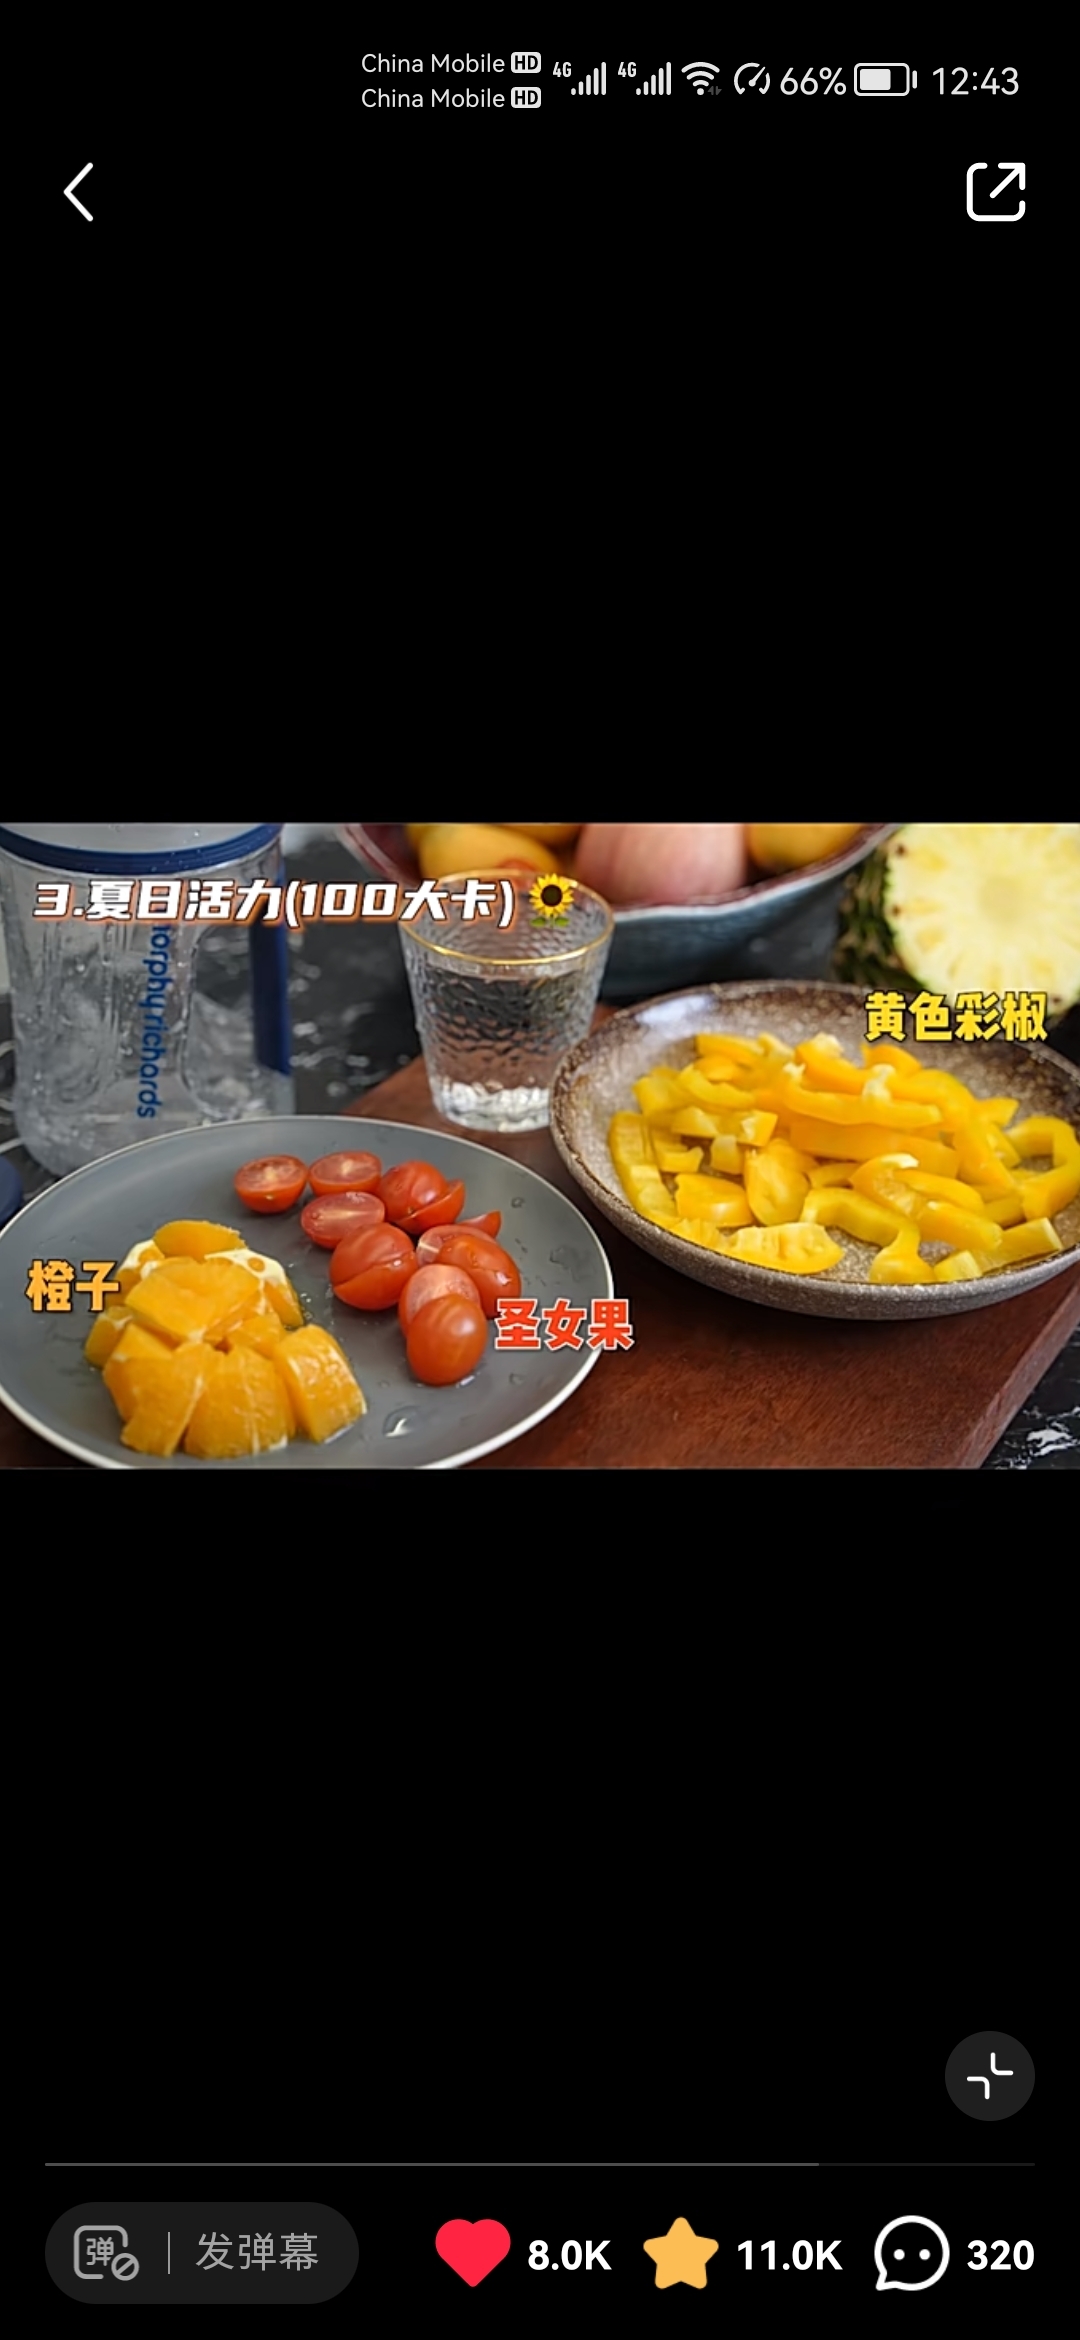 自用记录备忘 蔬菜汁   From小红书Mike 丁 体能教练的做法